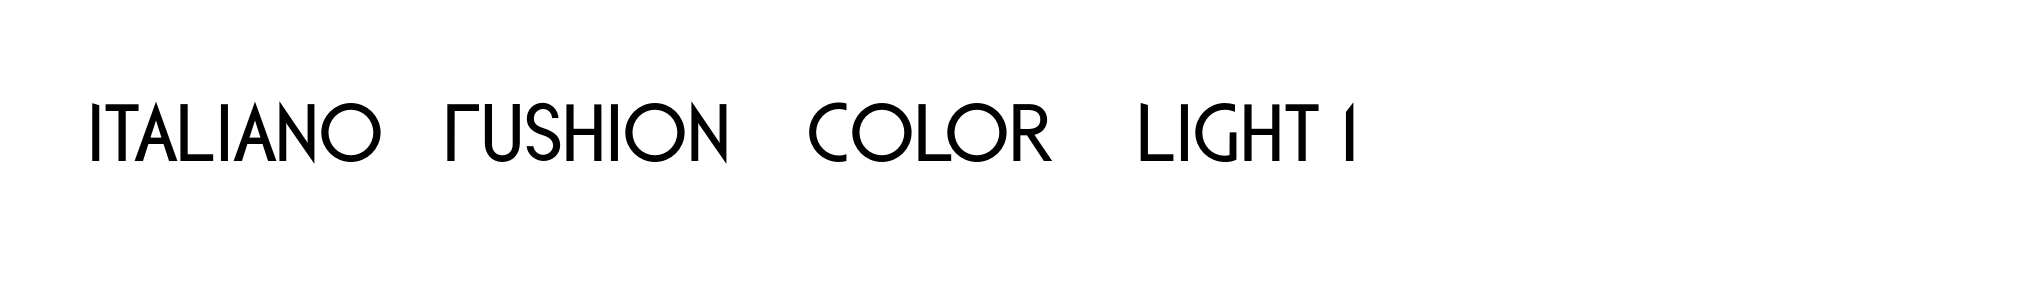 Italiano Fushion Color Light 1 image